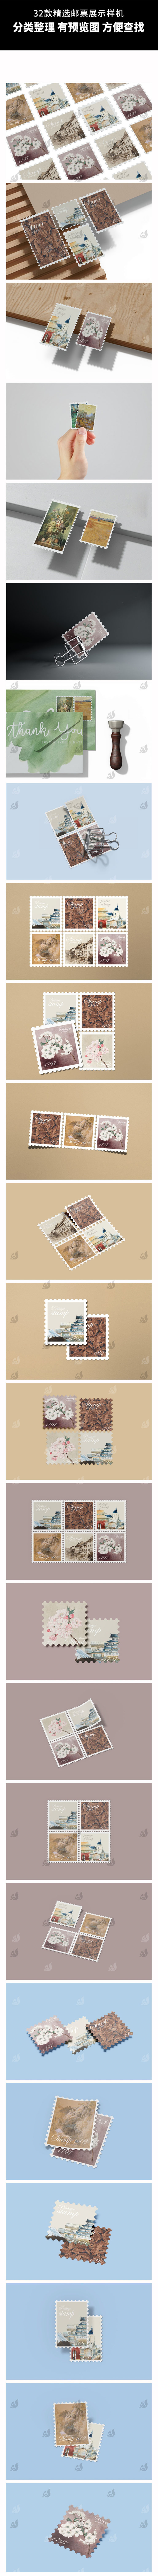 32款复古邮票多角度平铺矩阵排列文创提案展示效果图样机PSD设计素材 图片素材 第4张